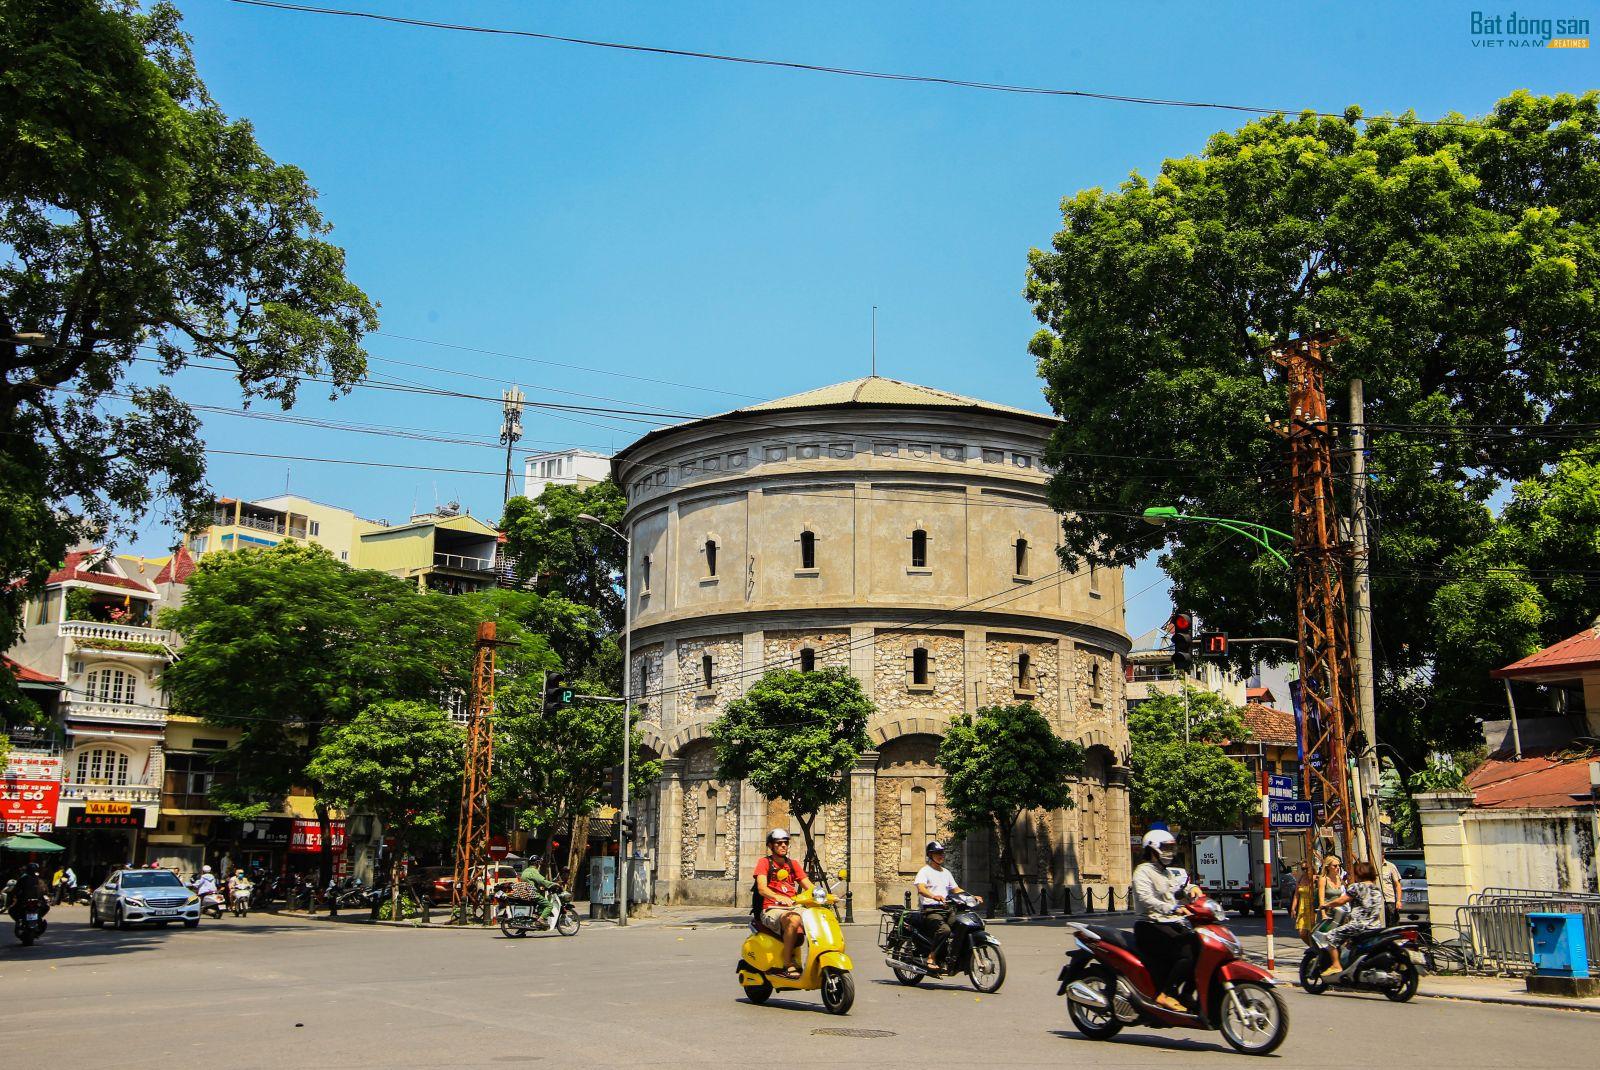 Tháp nước này bị bỏ không từ năm 1954 và trở thành điểm tham quan cho du khách khi đến Hà Nội.